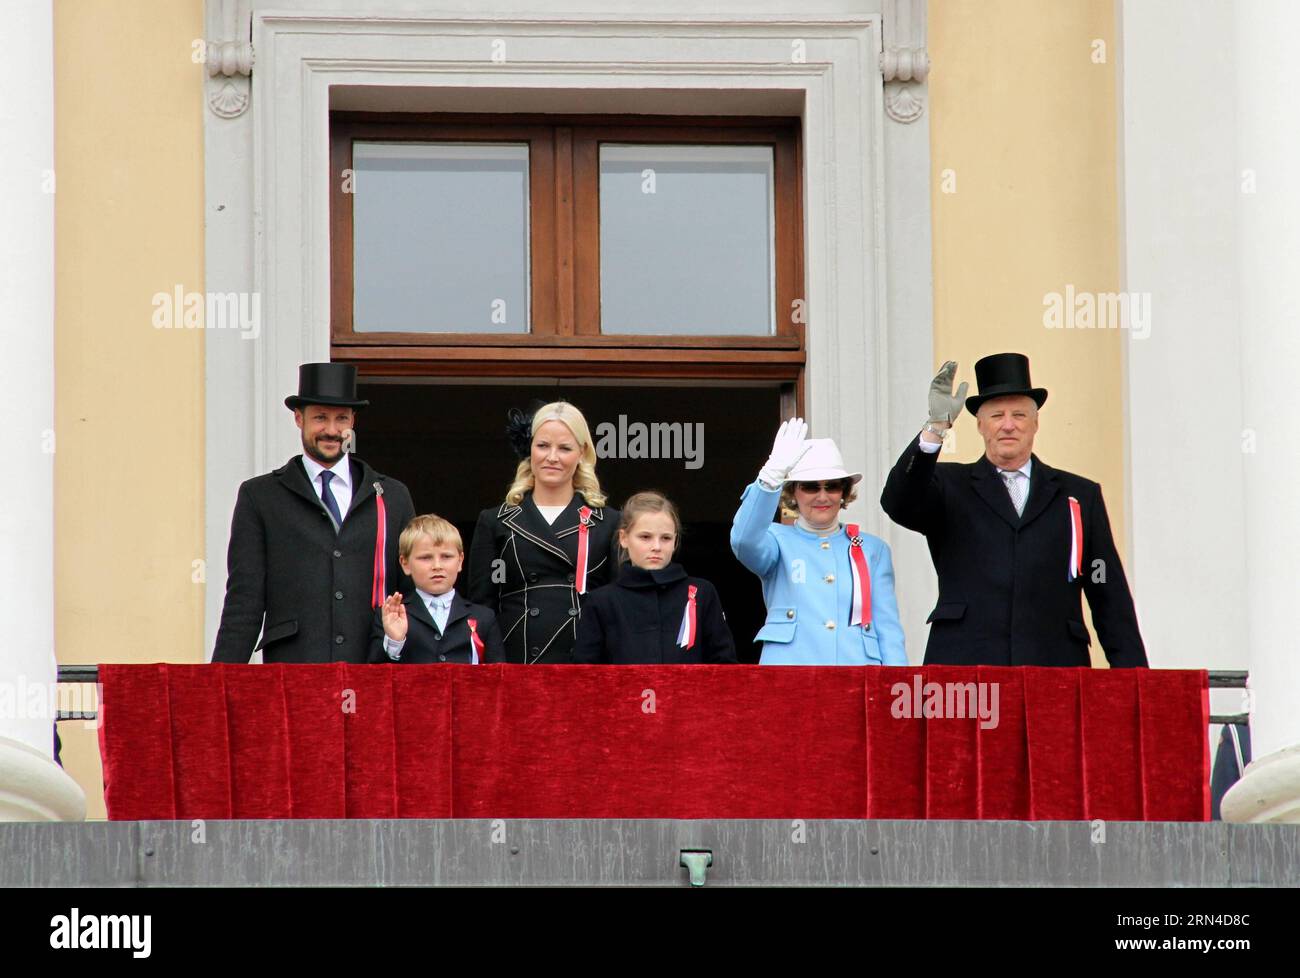 (150517) -- OSLO, 17 de mayo de 2015 -- El rey Harald V., la reina Sonja, el príncipe Haakon, la princesa Mette-Marit, Ingrid-Alexandra y Sverre Magnus - La familia real de Noruega ven un desfile conmemorando el Día de la Independencia del país en Oslo, Noruega, 17 de mayo de 2015. ) NORUEGA-OSLO-INDEPENDENCIA DÍA LiangxYouchang PUBLICATIONxNOTxINxCHN 150517 Oslo 17 2015 de mayo Rey Harald V Reina Sonja Príncipe Haakon Princesa Mette Marit Ingrid Alexandra y Sverre Magnus Noruega S Familia Real Ver un desfile conmemorando el Día de la Independencia del País en Oslo Noruega 17 2015 de mayo Noruega Día de la Independencia de Oslo LiangxYouchang PUBLICATIONxNOTxIN Foto de stock